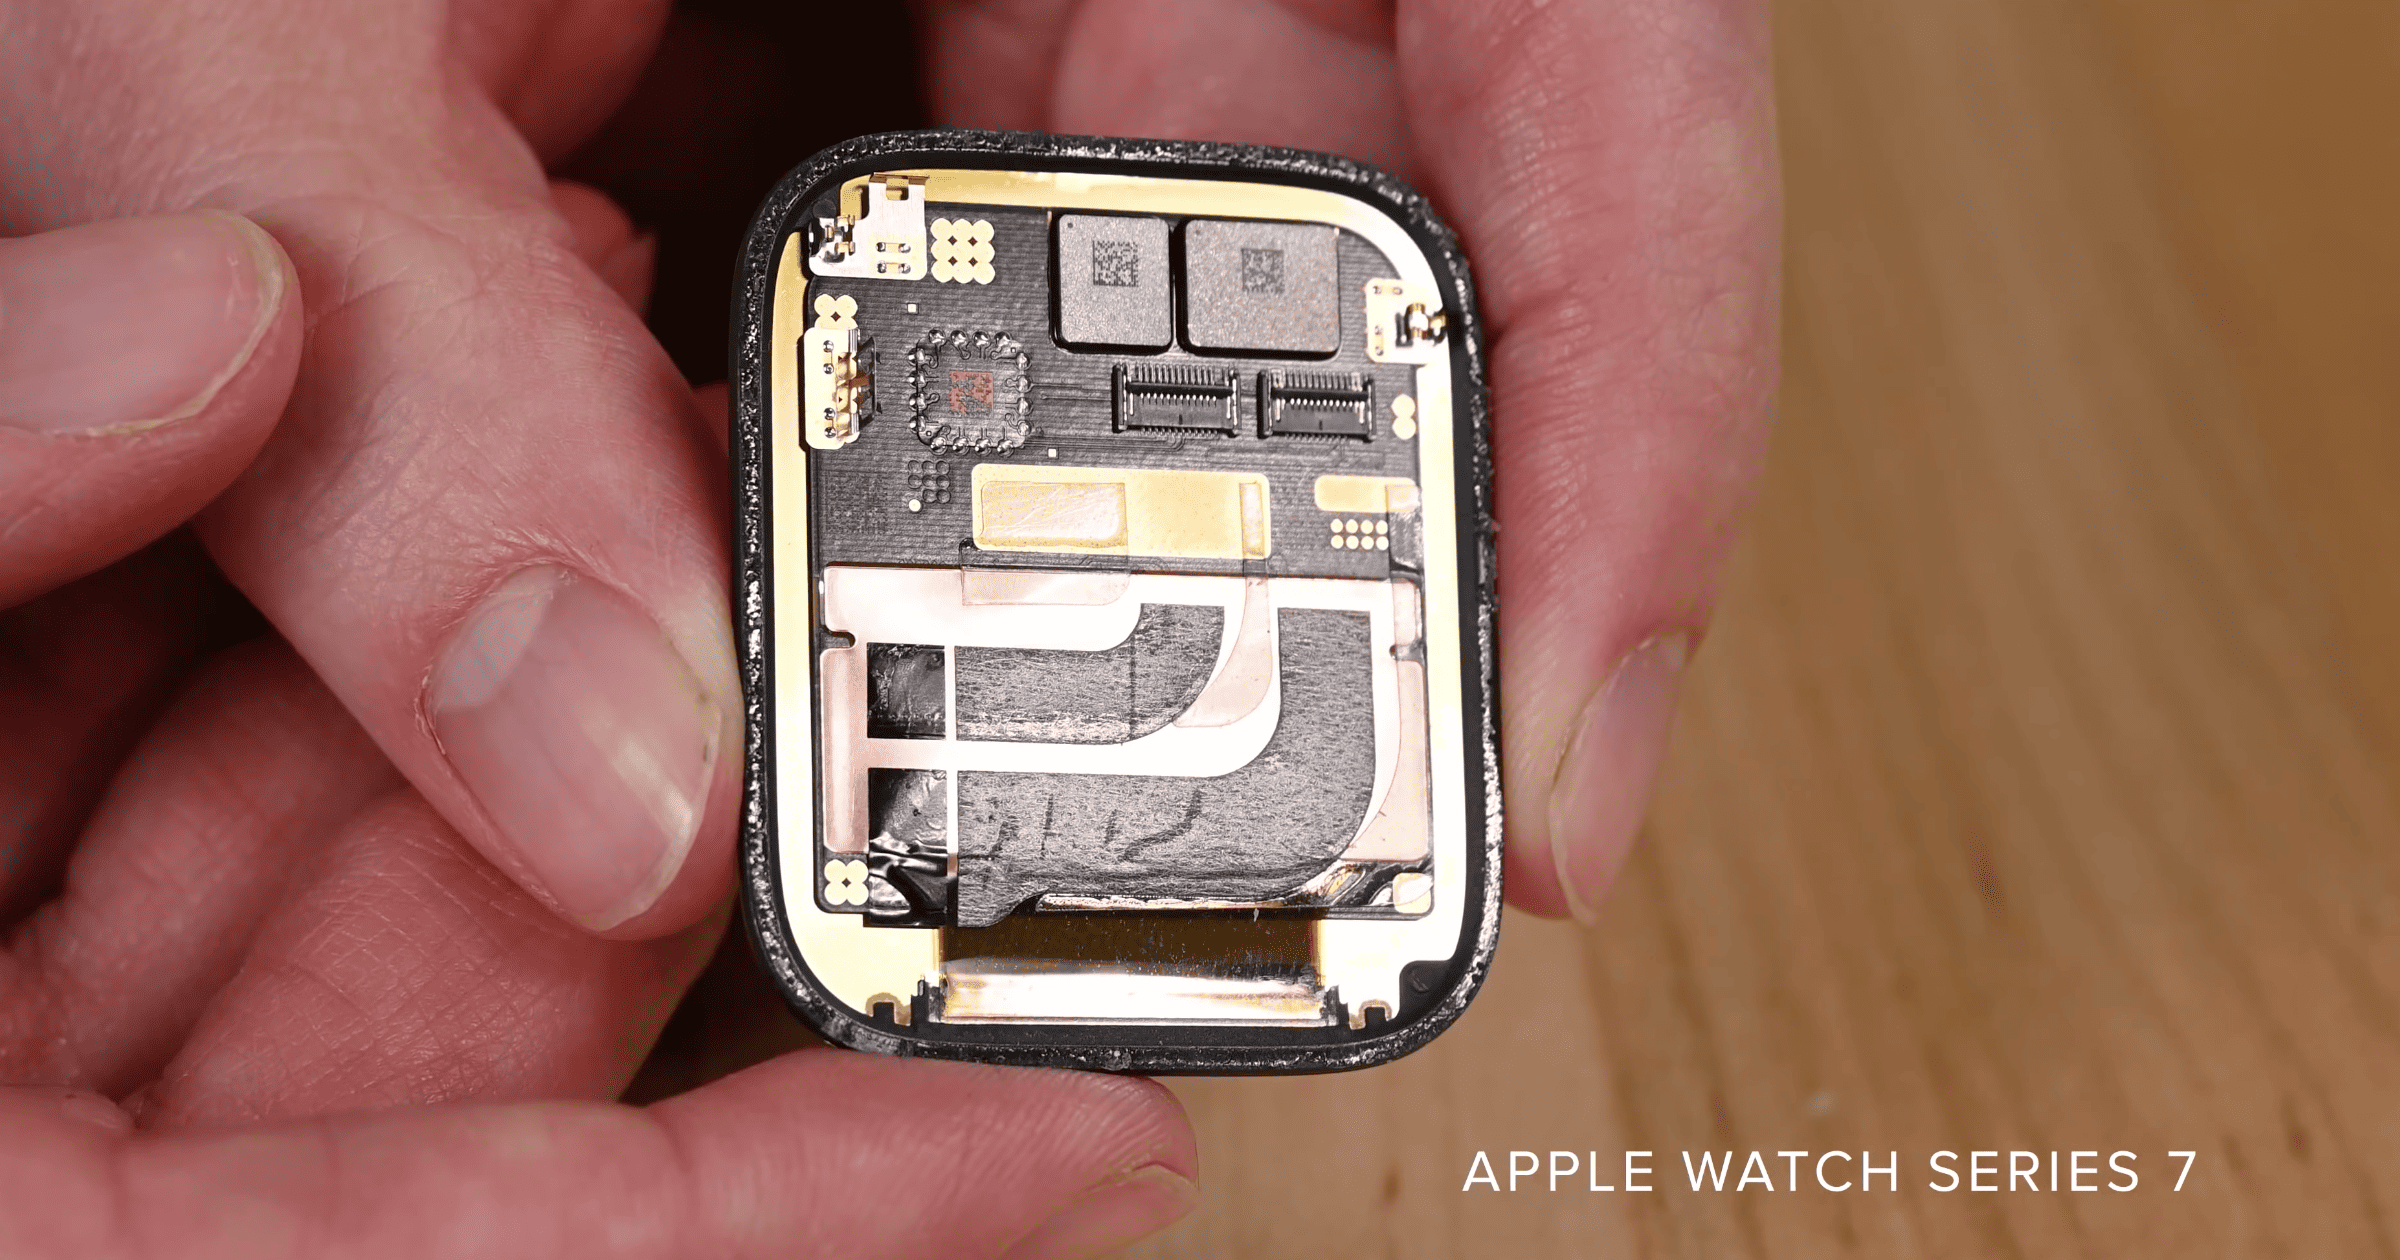 Apple Watch Series 7 teardown